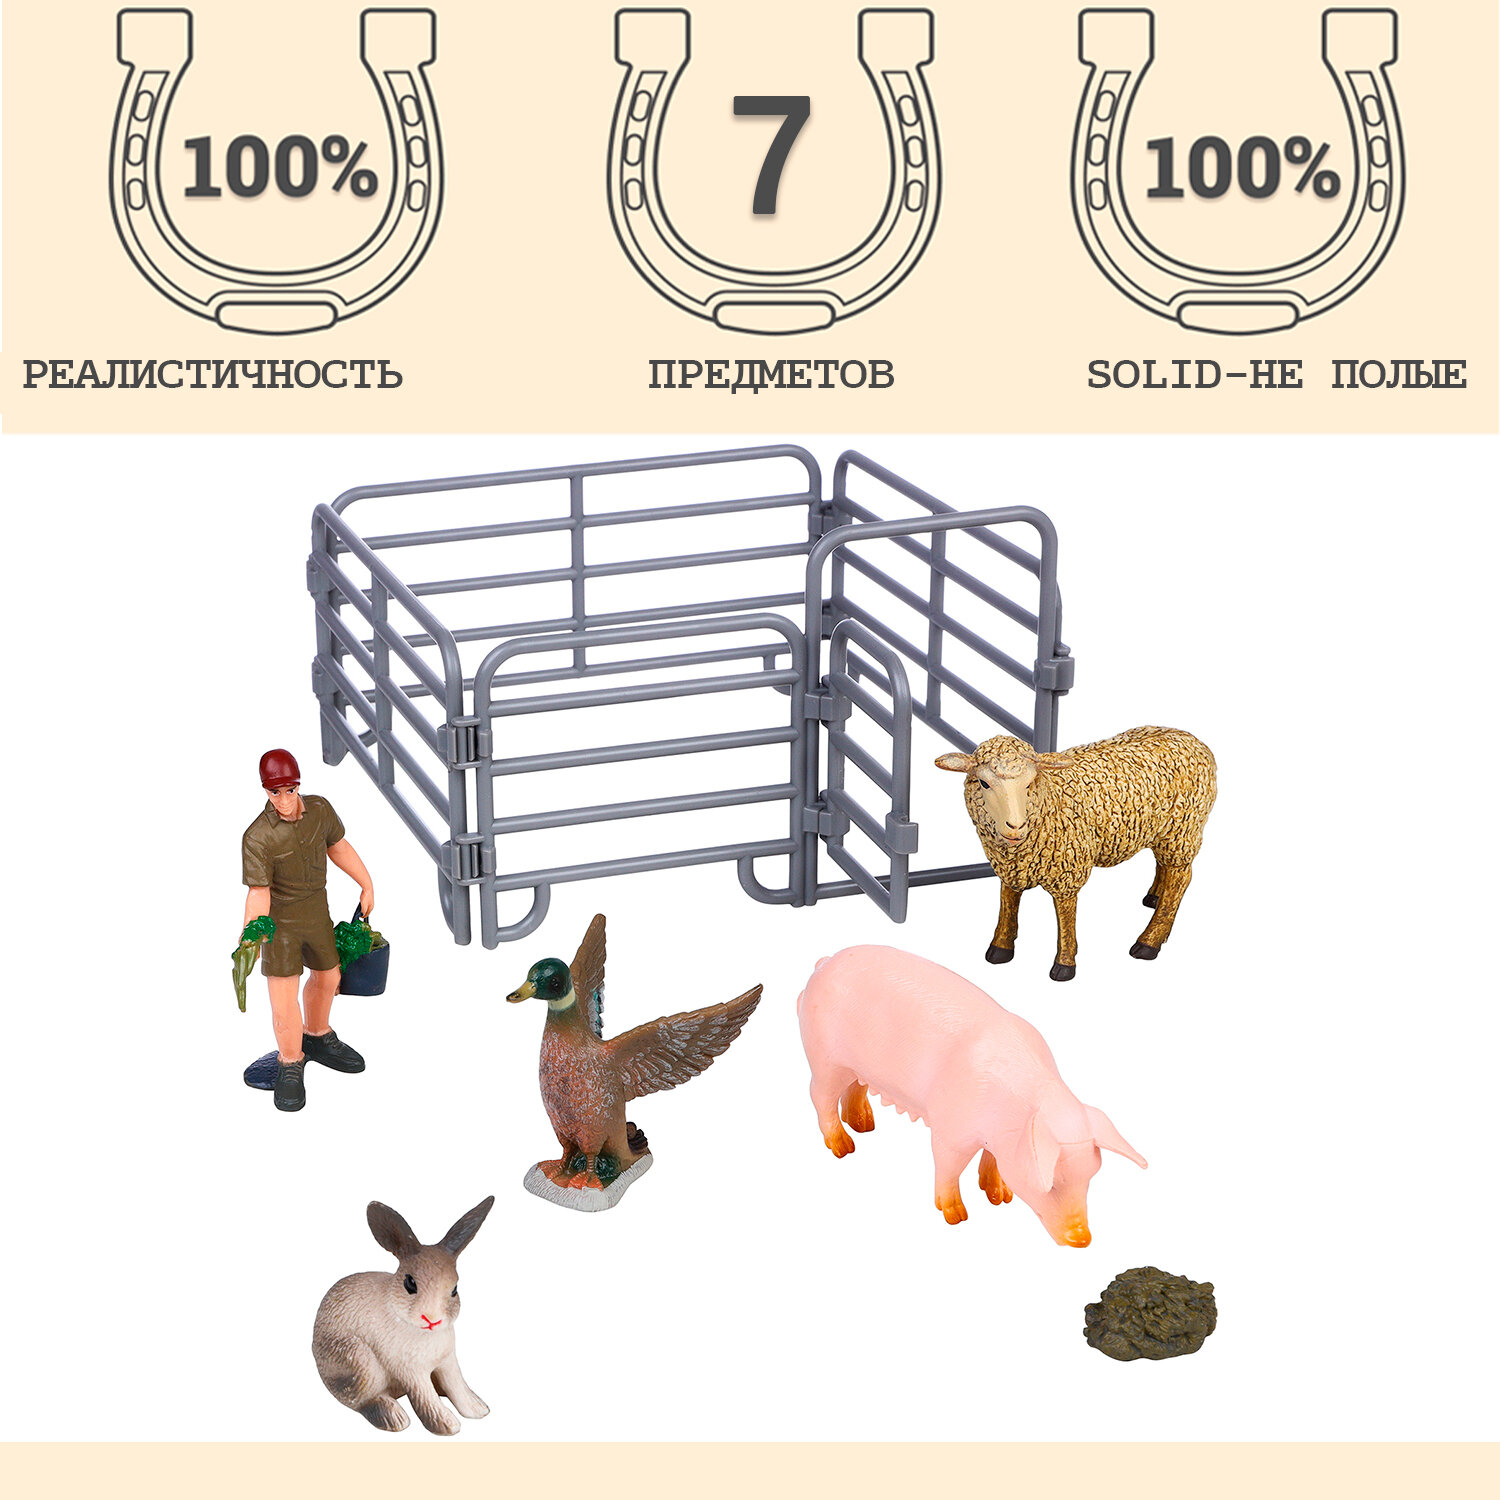 Фигурки животных серии "На ферме": кролик, свинья, утка, овца, фермер, ограждение (набор из 7 предметов)